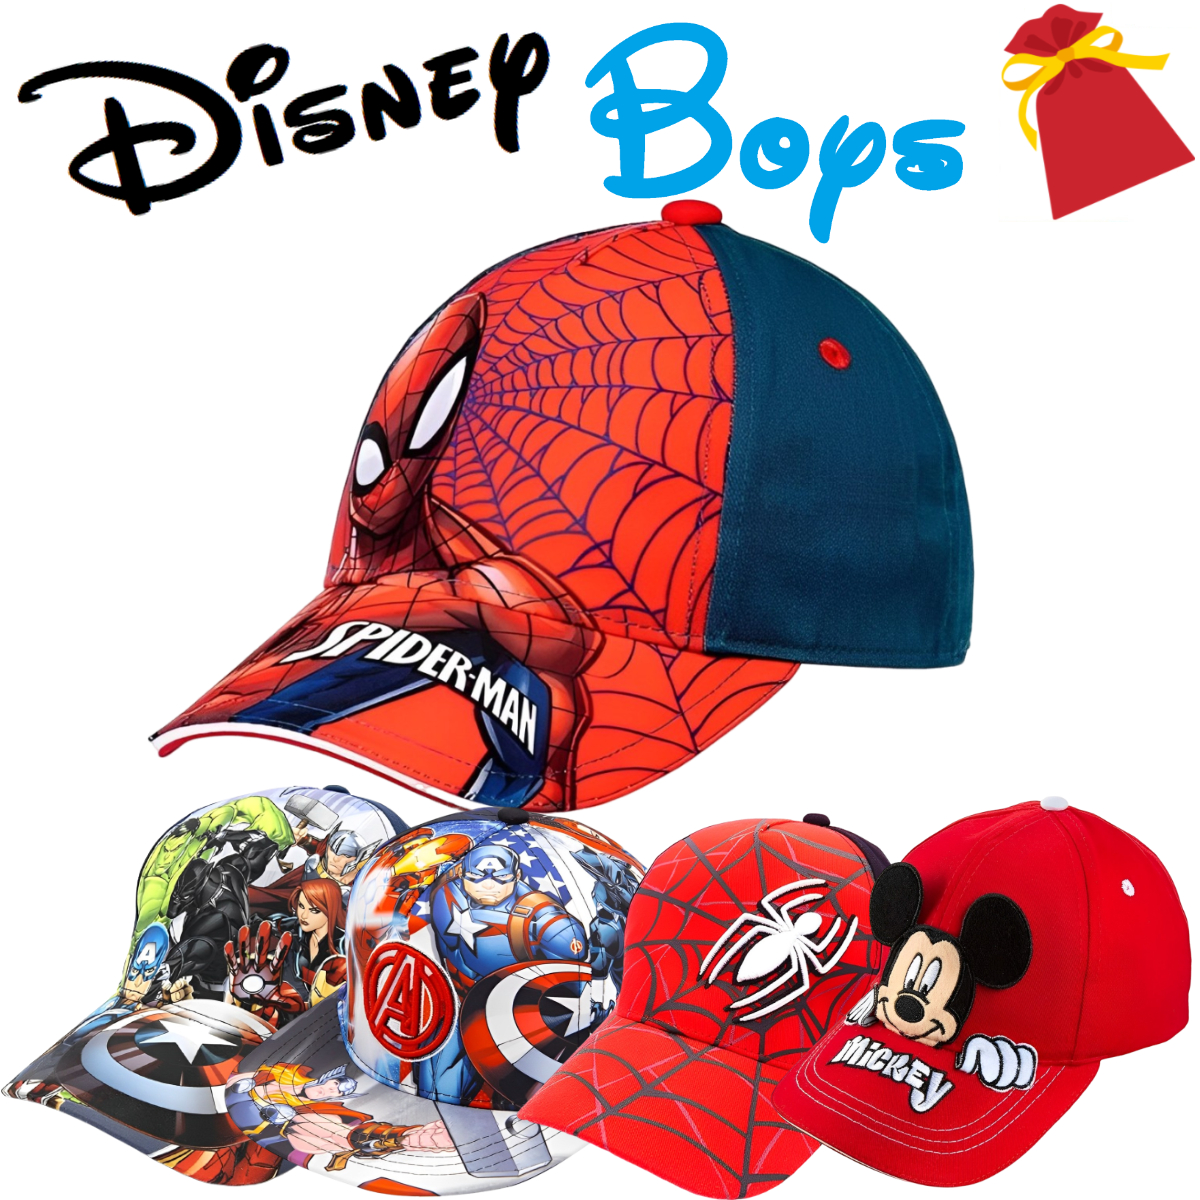 ディズニー キッズ 子供 推奨年齢 3-12歳 スパイダーマン バットマン アベンジャーズ ミニオンズ スターウォーズ 帽子 キャップ画像